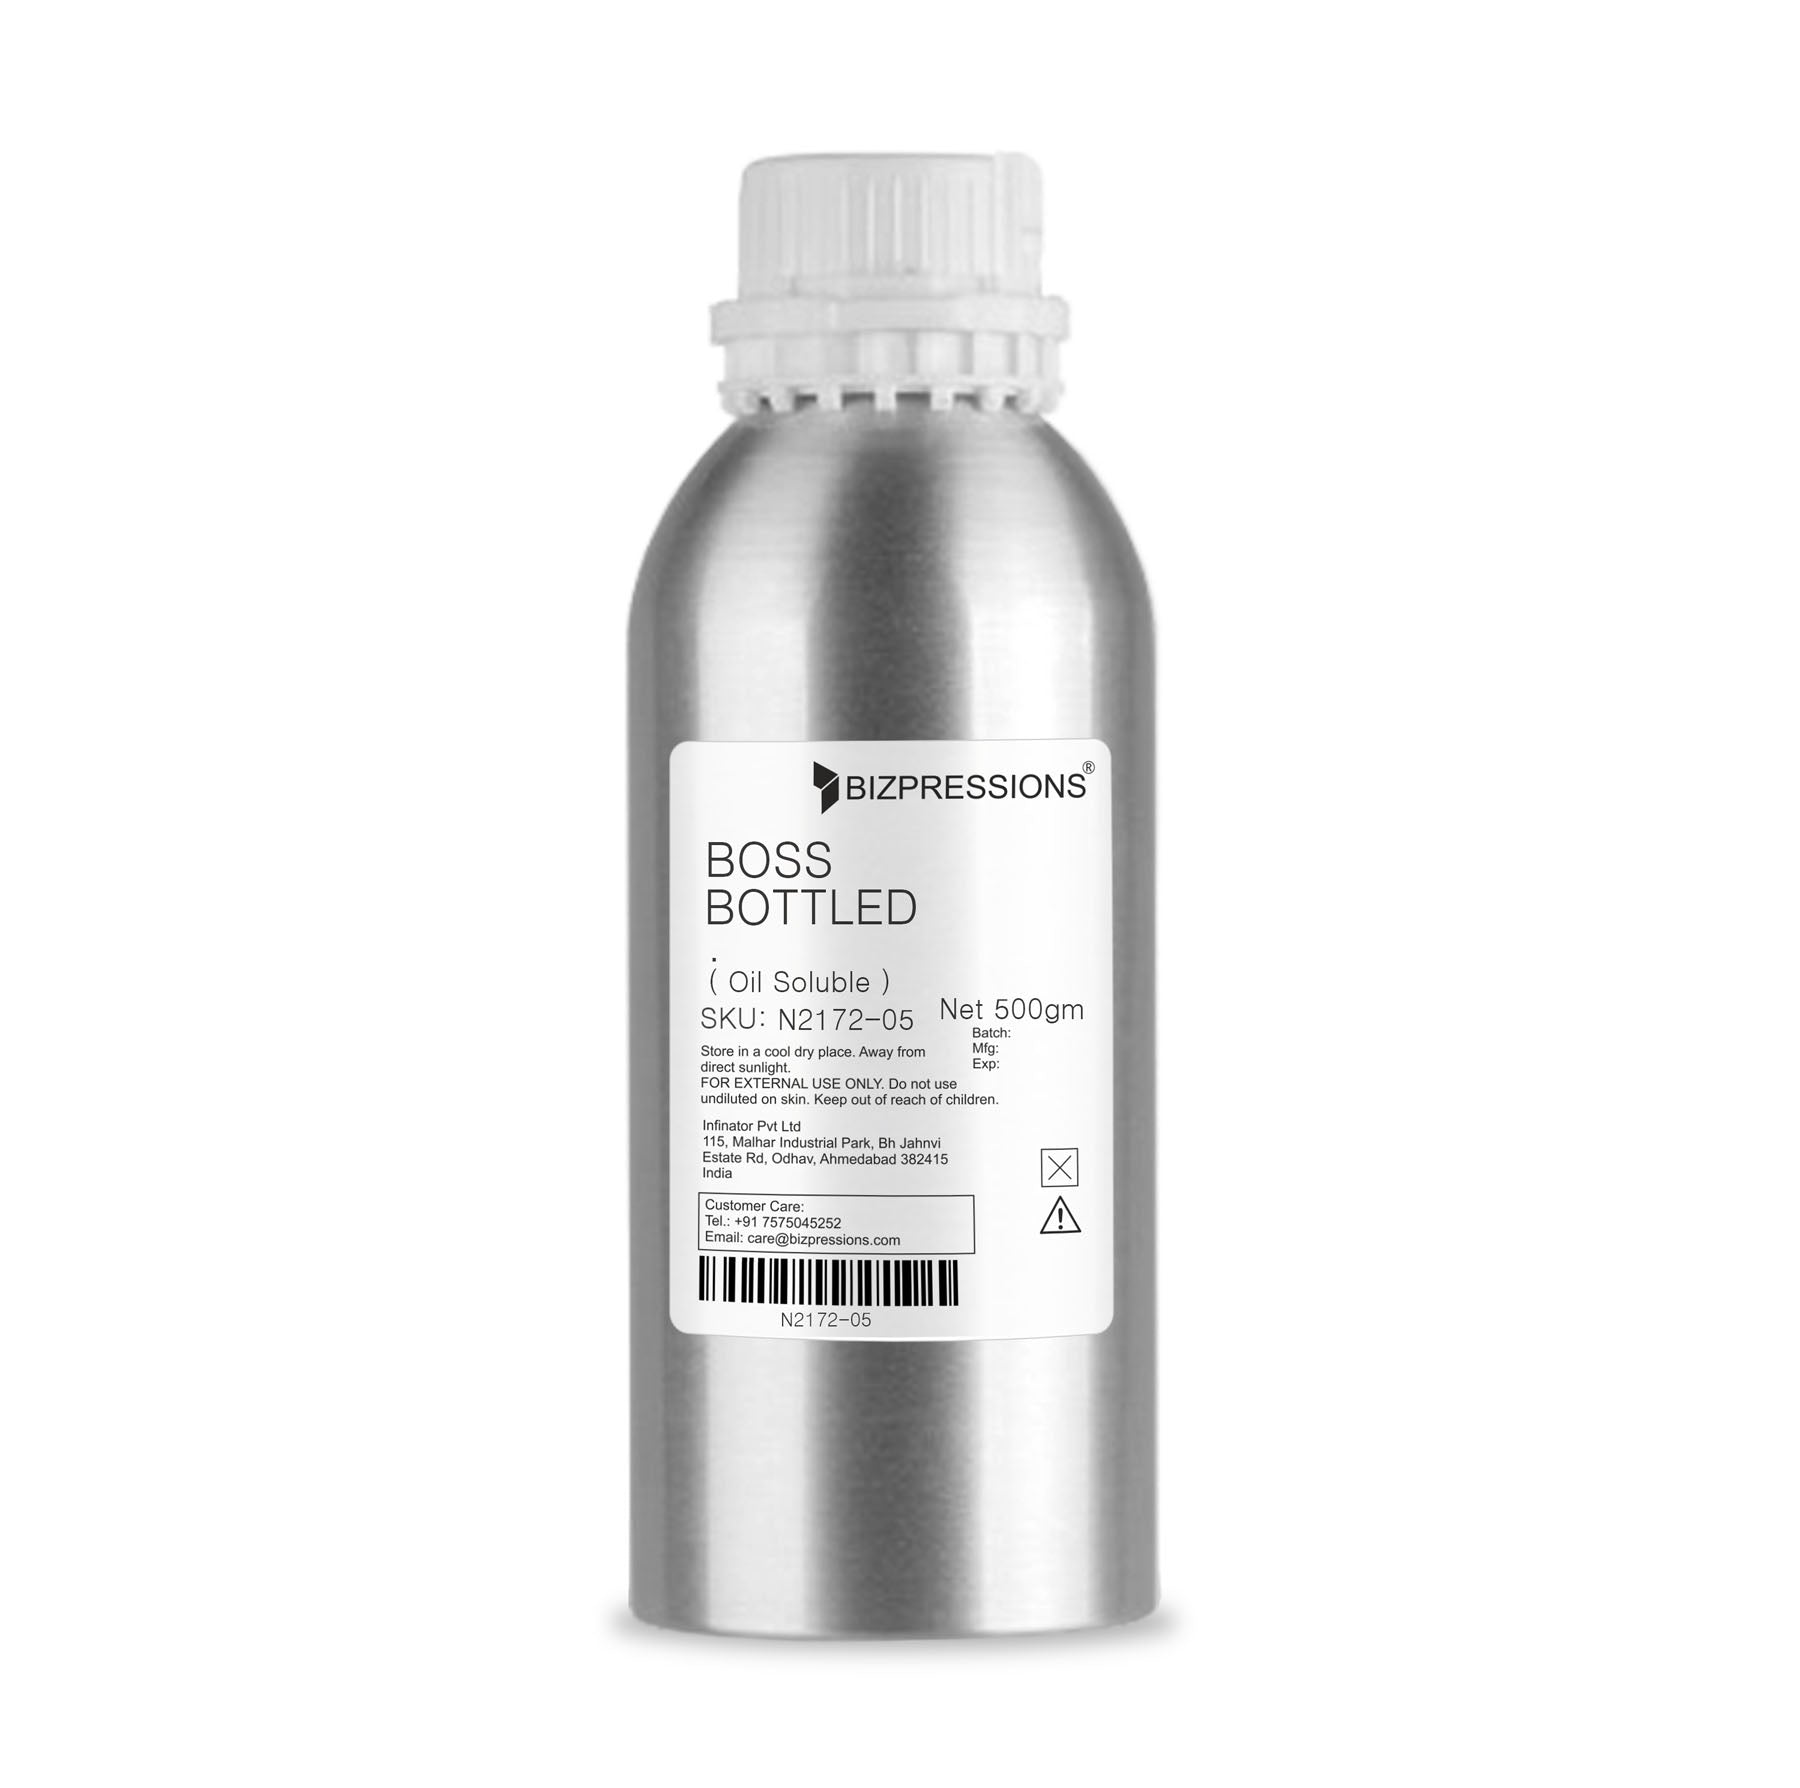 BOSS BOTTLED - Fragrance ( Oil Soluble ) - 500 gm